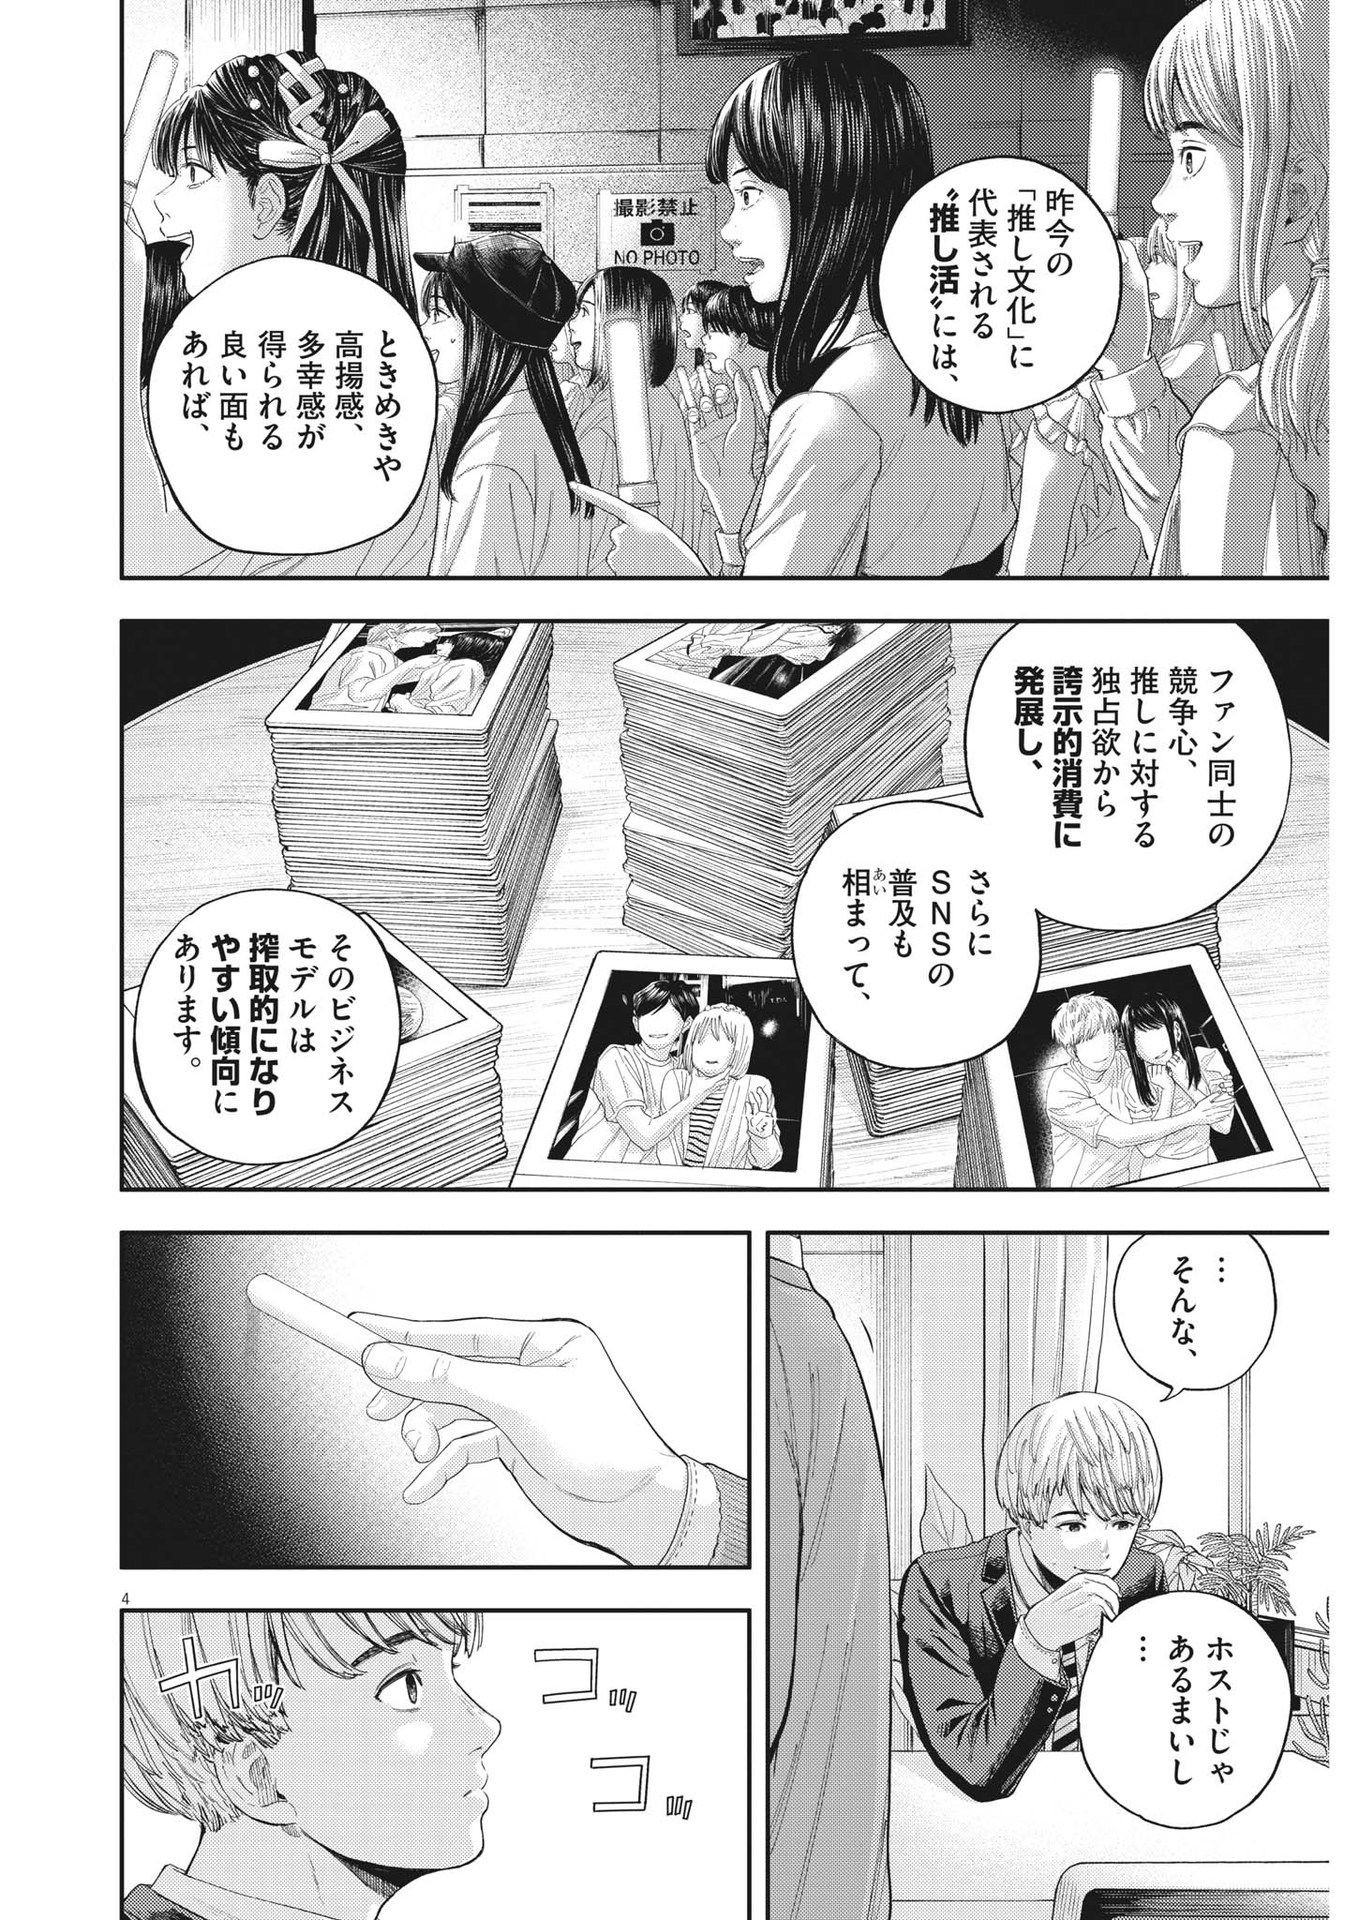 Yumenashi-sensei no Shinroshidou - Chapter 7 - Page 4